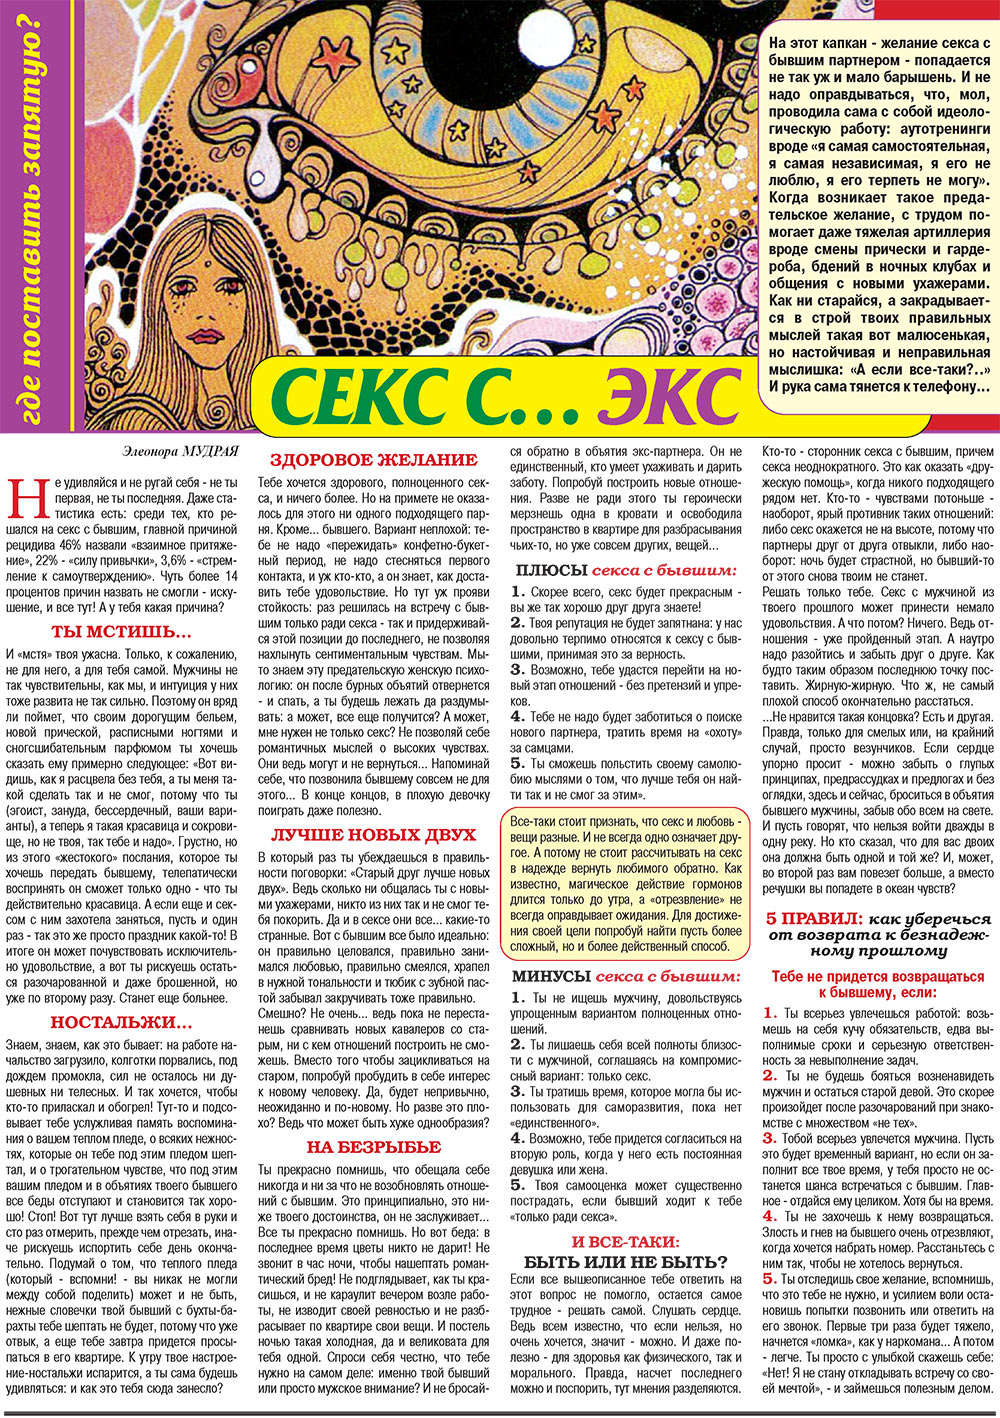 Кругозор плюс!, газета. 2008 №10 стр.54